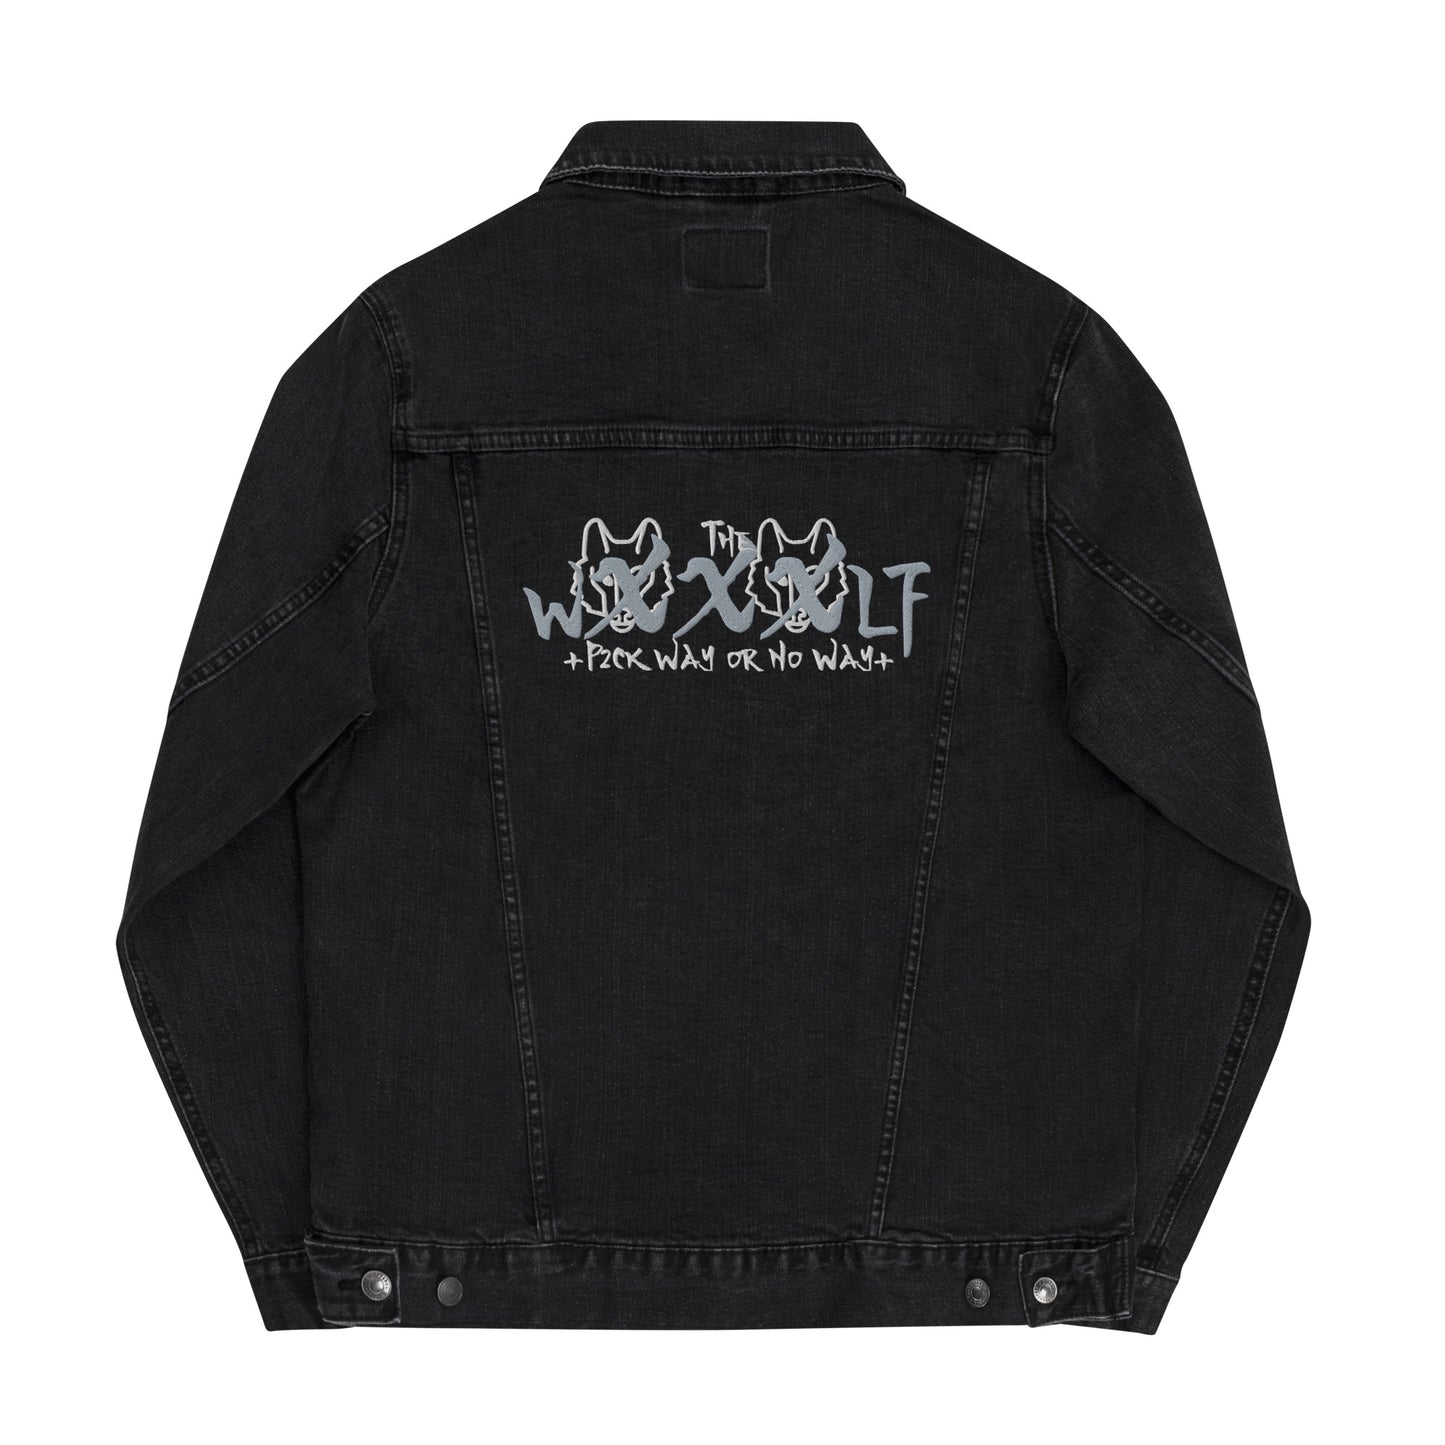 "Wxxxlf" Charcoal Black Denim Jacket